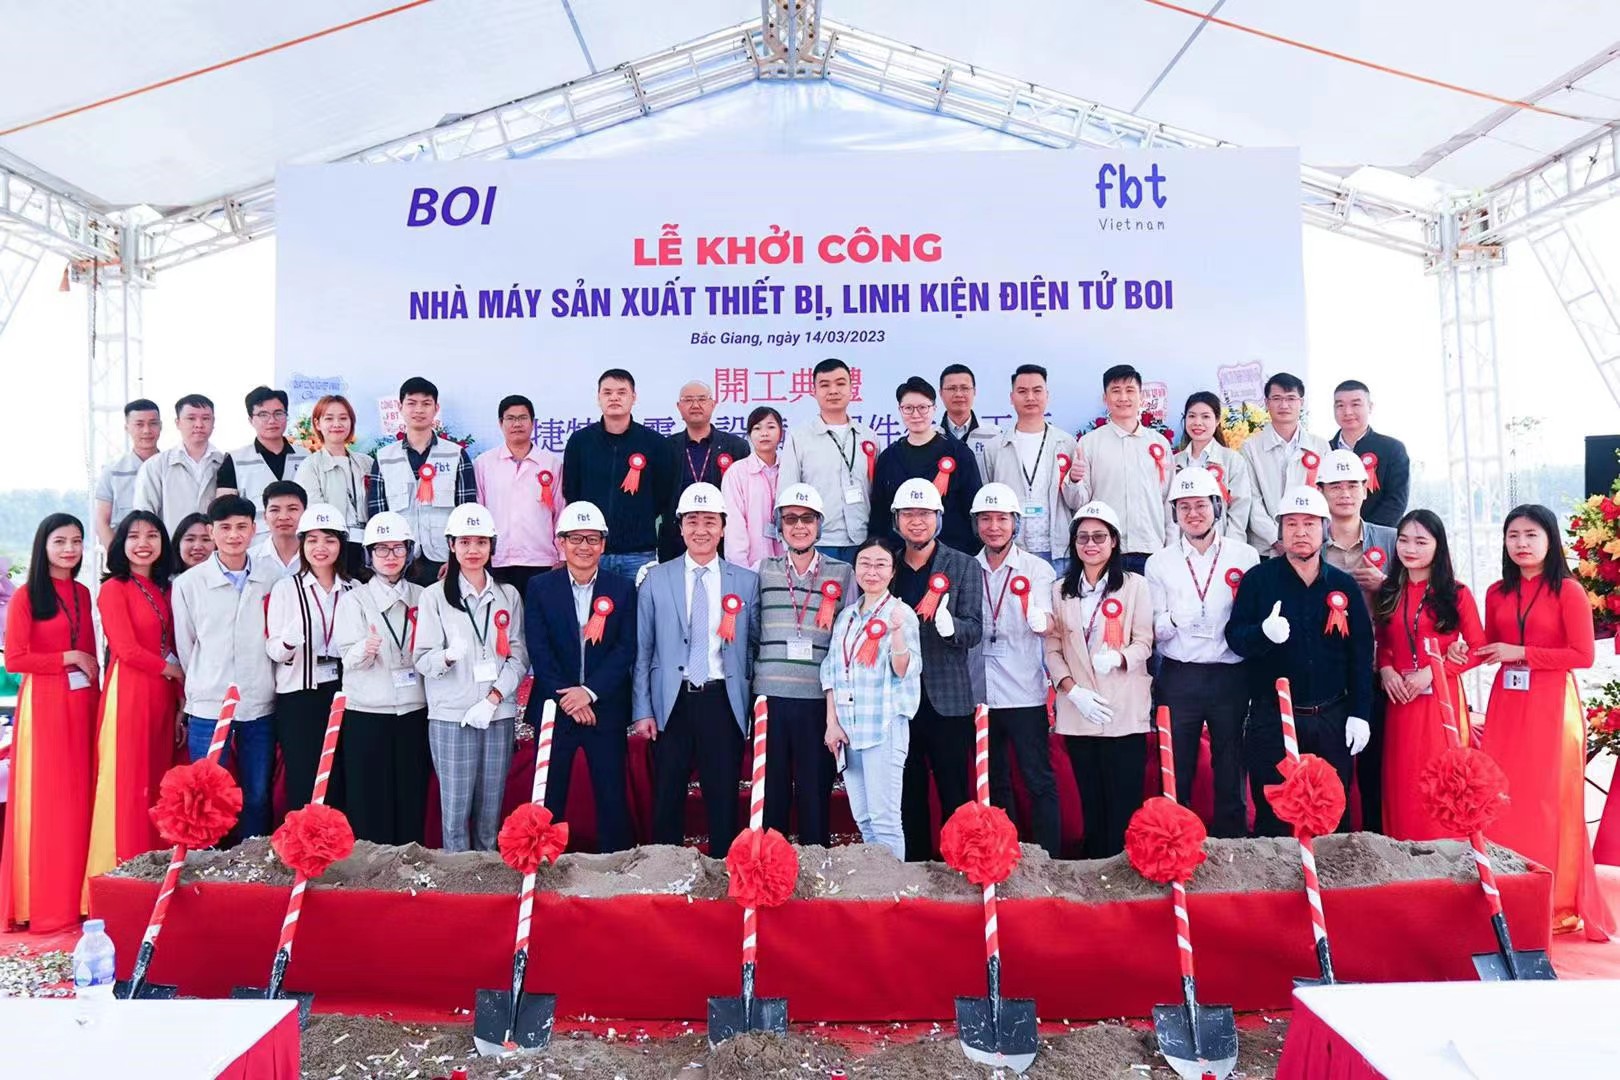 Ngày 14 tháng 3 năm 2023, lễ khởi công nhà xưởng mới của BOI được tổ chức long trọng tại tỉnh Bắc Giang, Việt Nam.